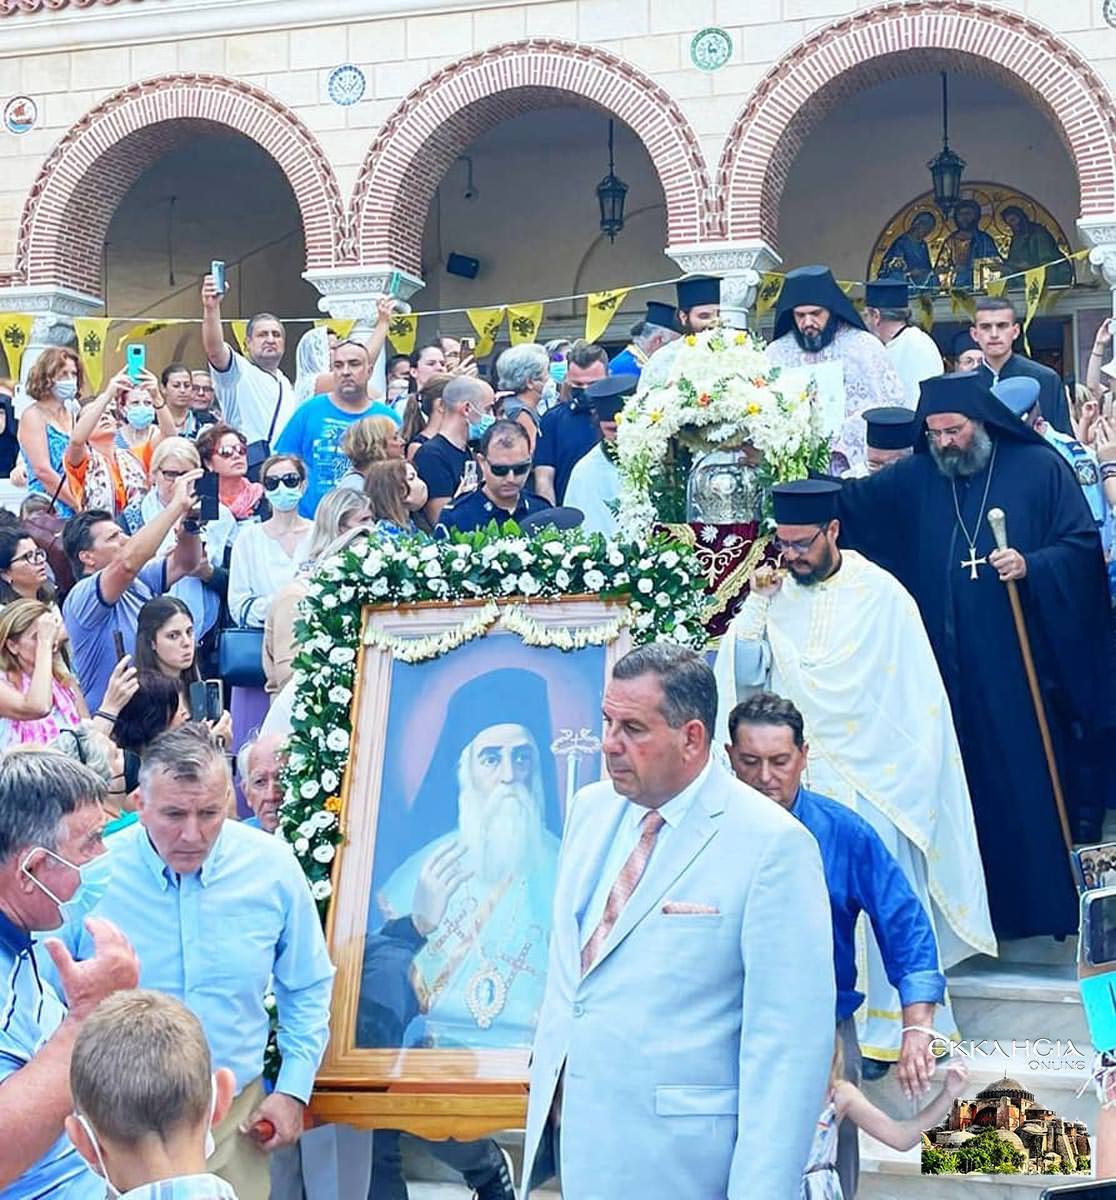 Λαμπρά εορτάστηκε η ανακομιδή των λειψάνων του αγίου Νεκταρίου στην Αίγινα